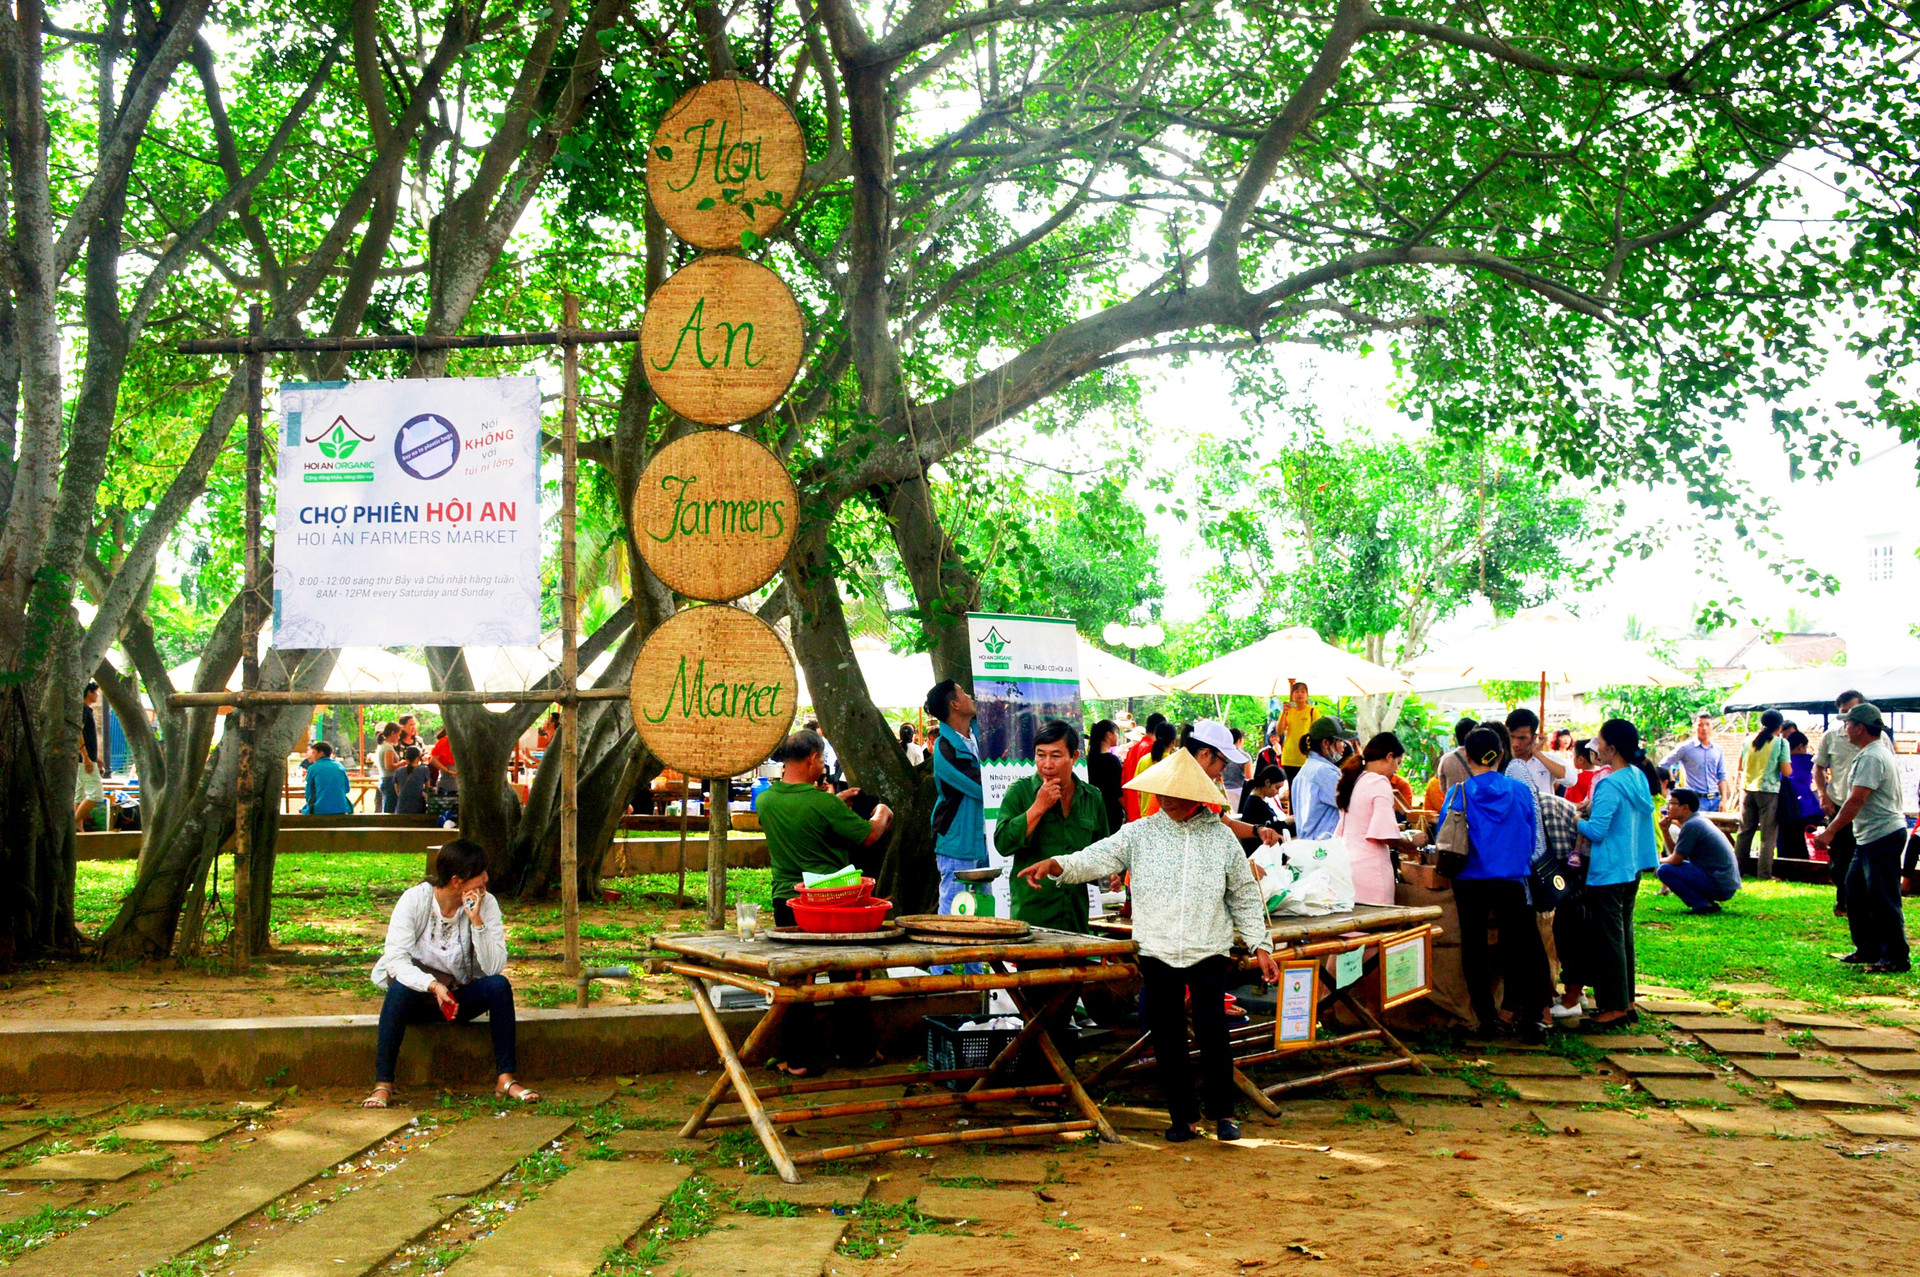 Chợ phiên Hội An lần đầu tiên được tổ chức tại công viên Sơn Phô. Ảnh: Q.T